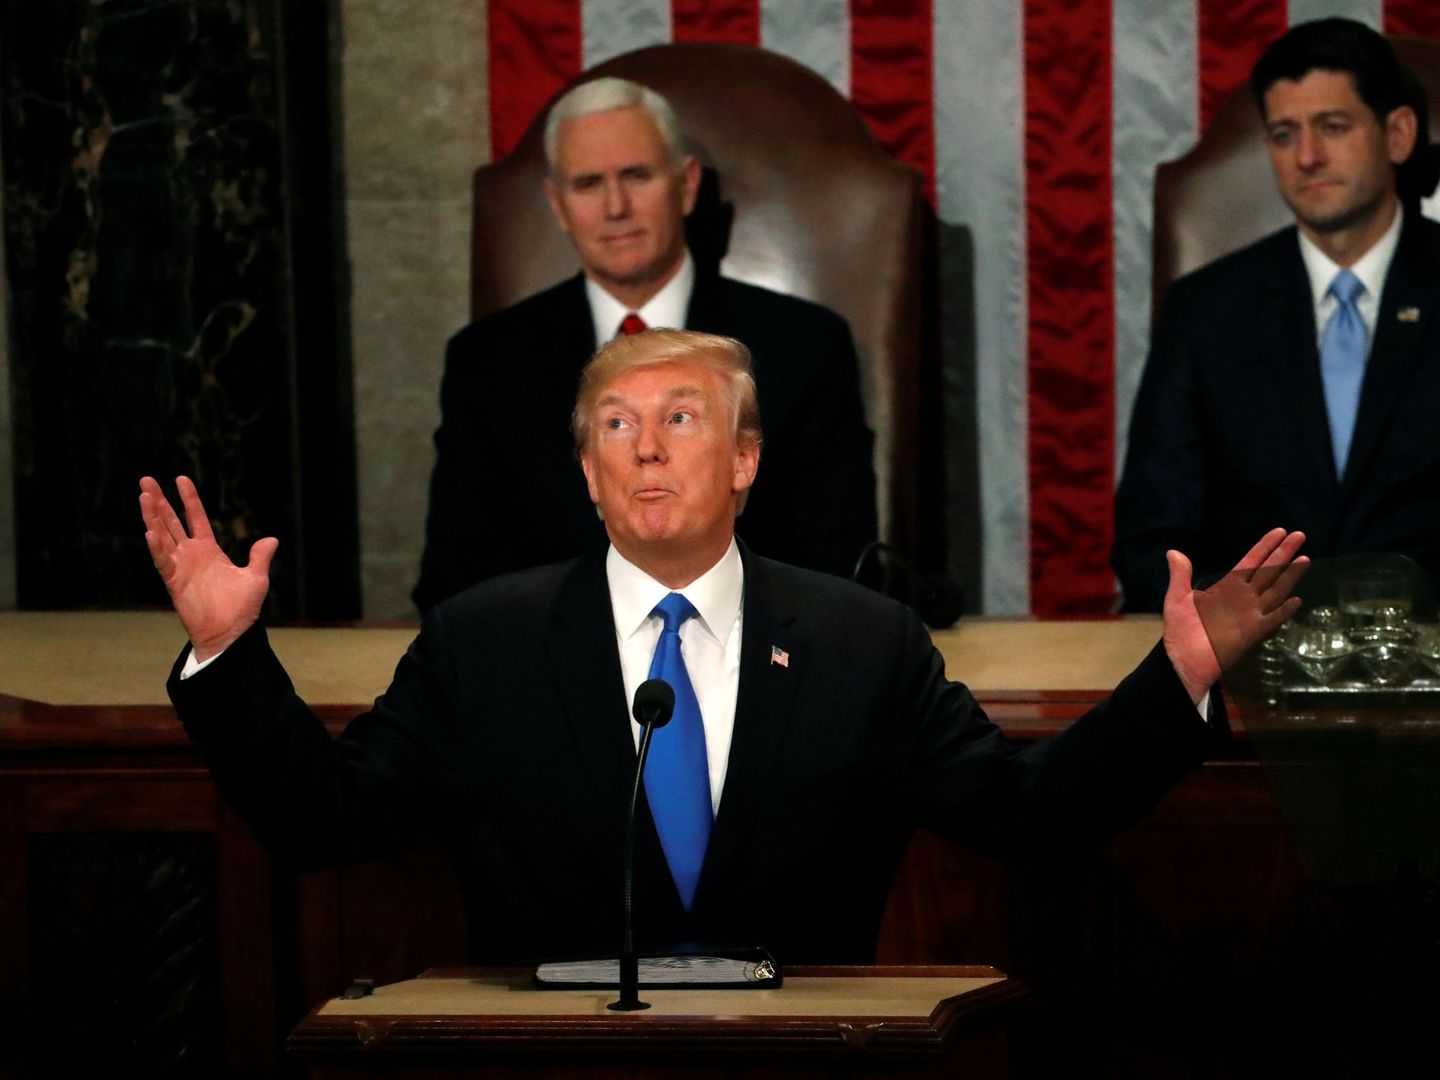 El presidente Donald Trump gesticula durante su discurso de Estado. (Reuters)